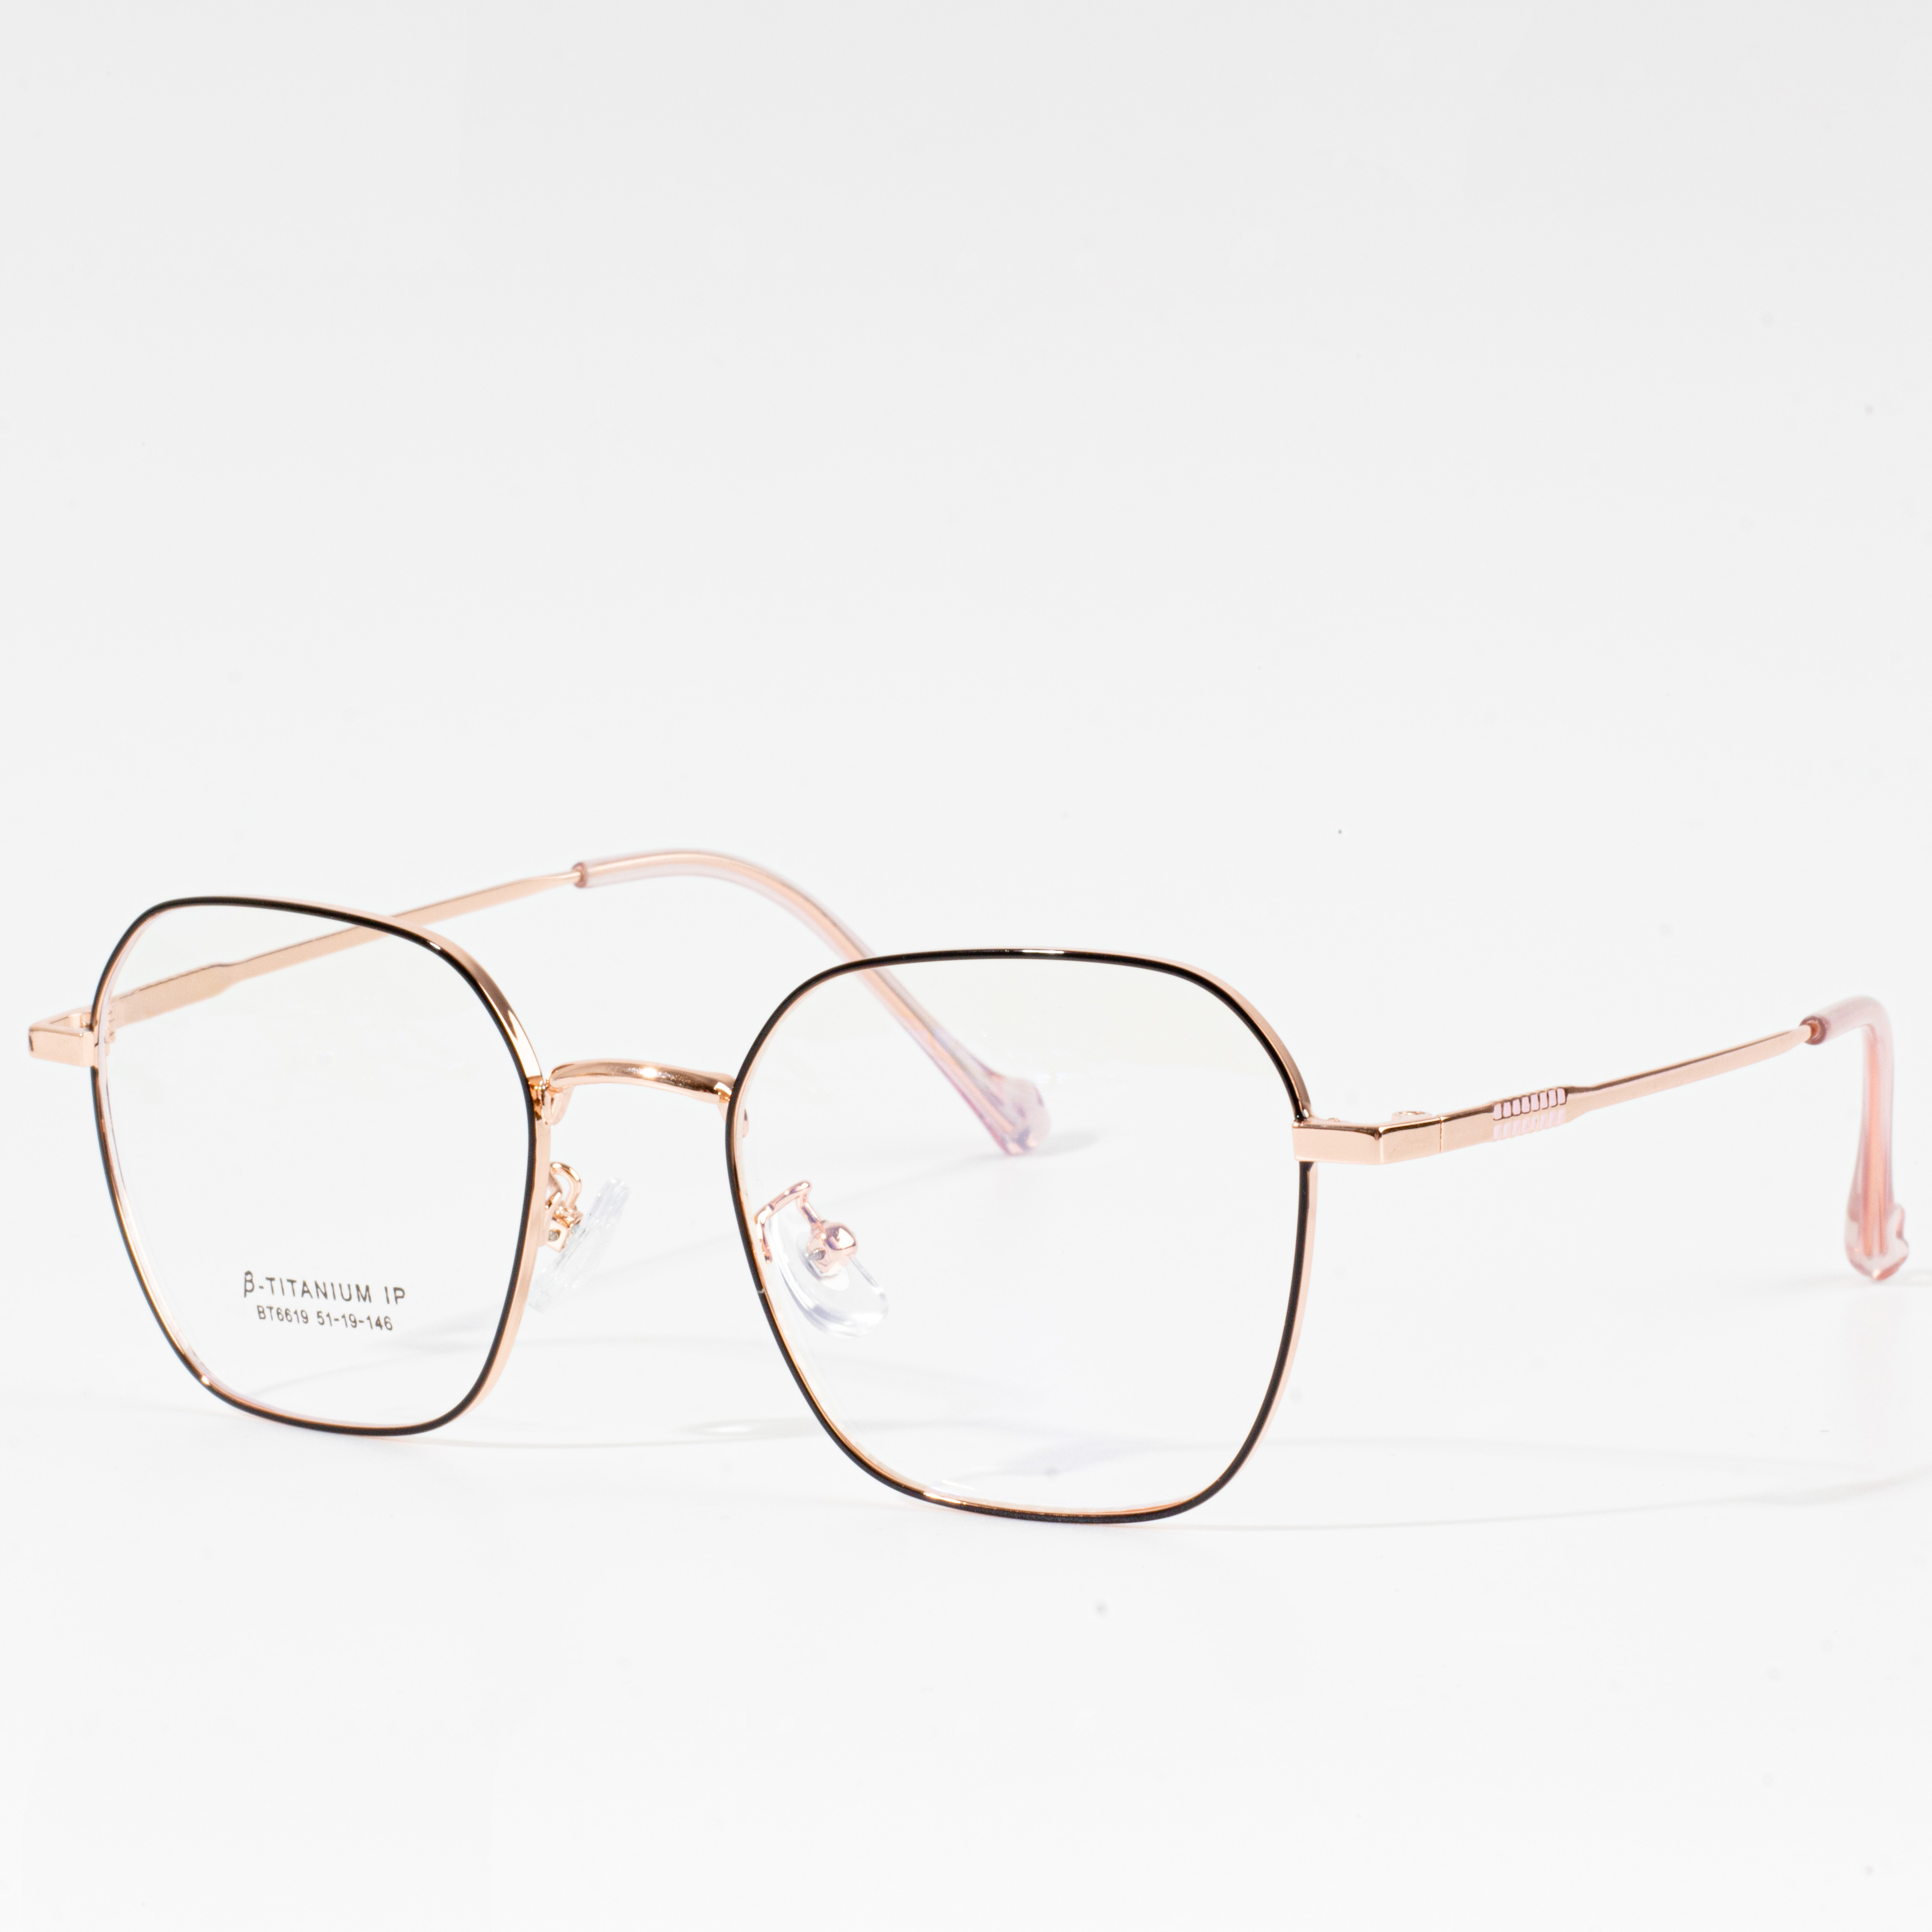 စိတ်ကြိုက်မျက်မှန်ဘောင်များ